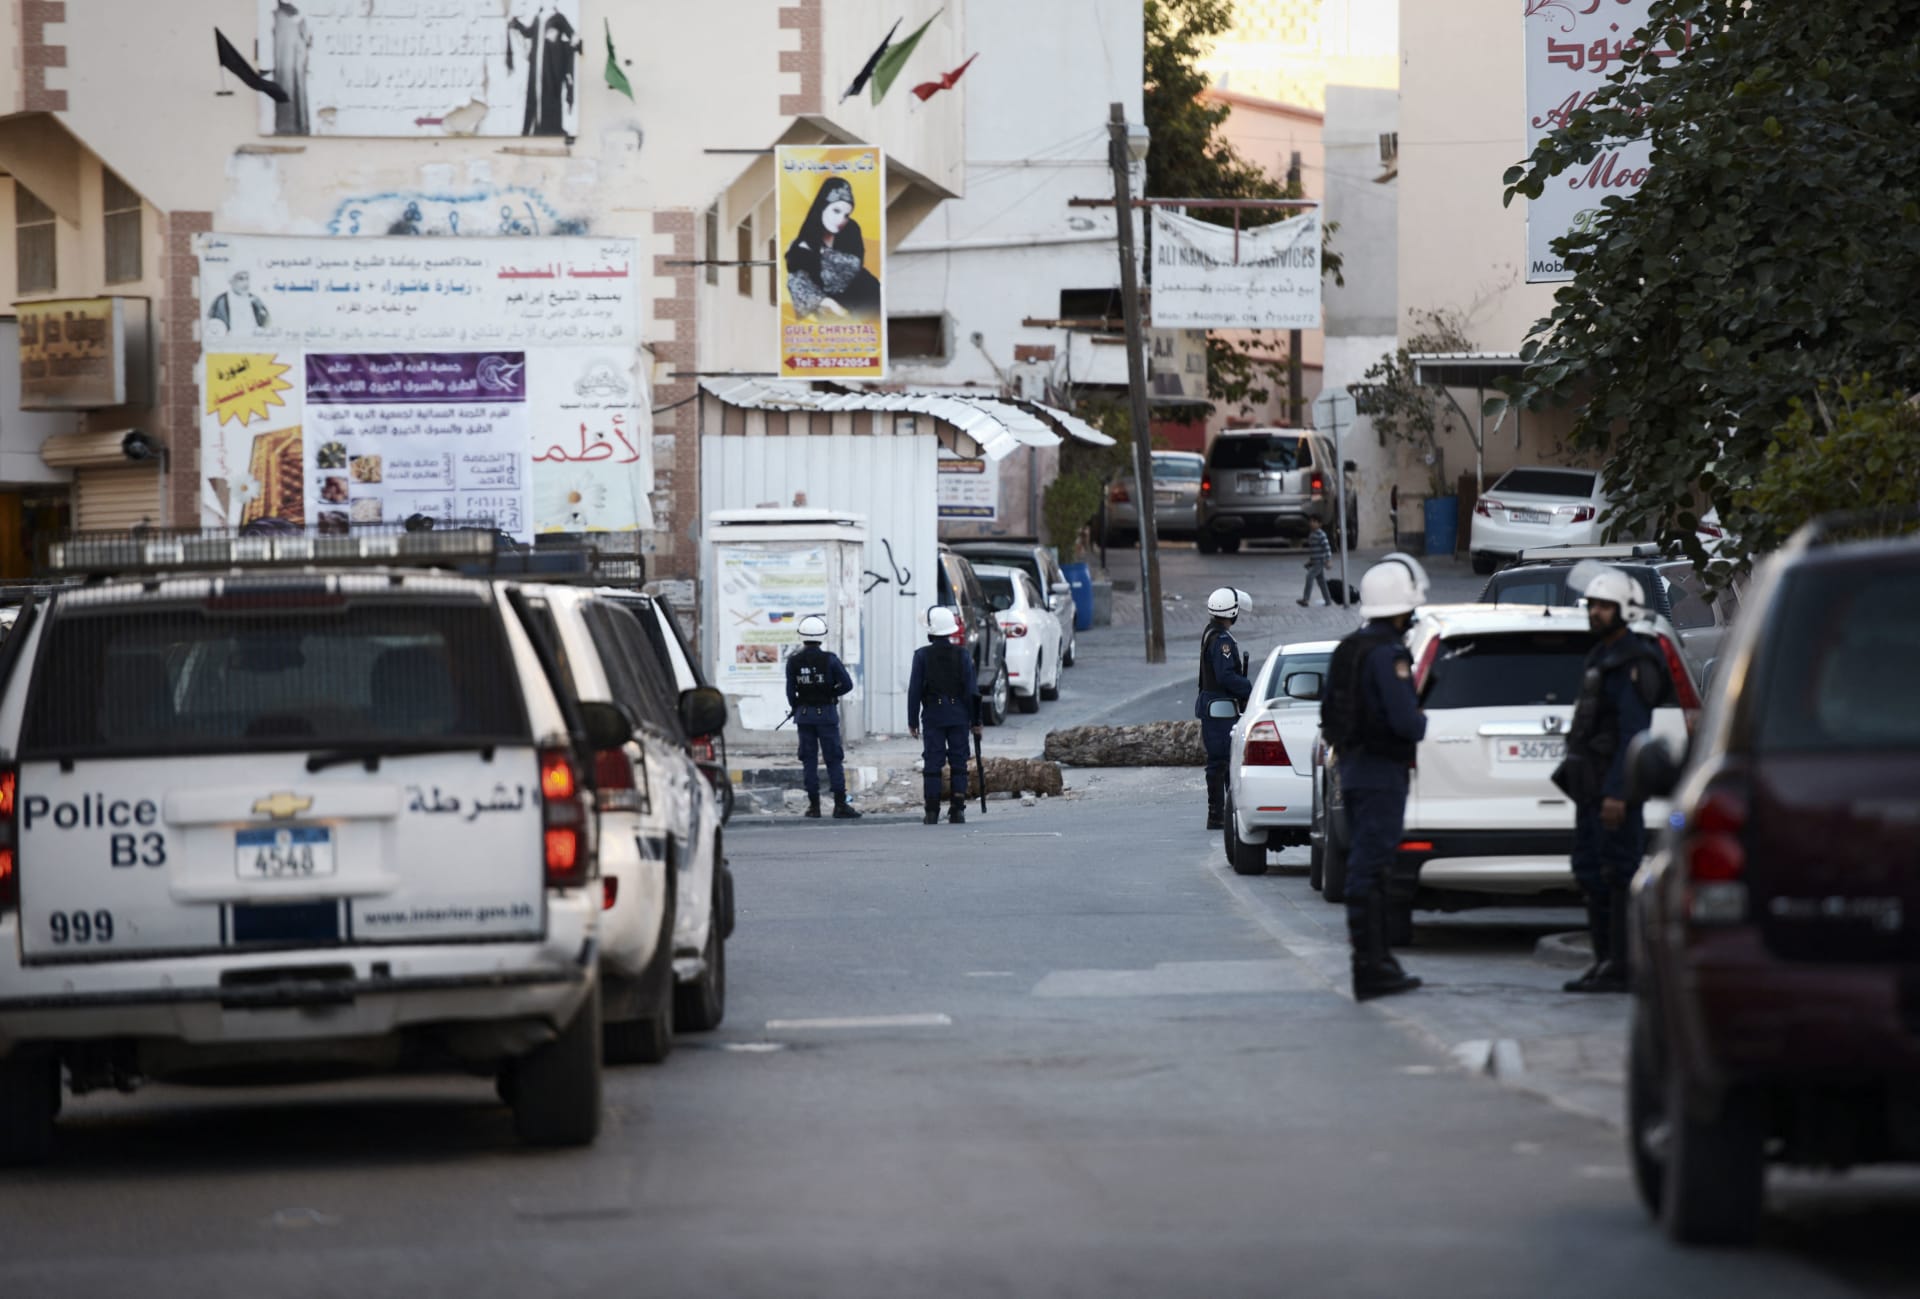 داخلية البحرين ترد بعد تداول فيديو لامرأة تزعم وقوع "مخالفات" بالقبض على ابنها 